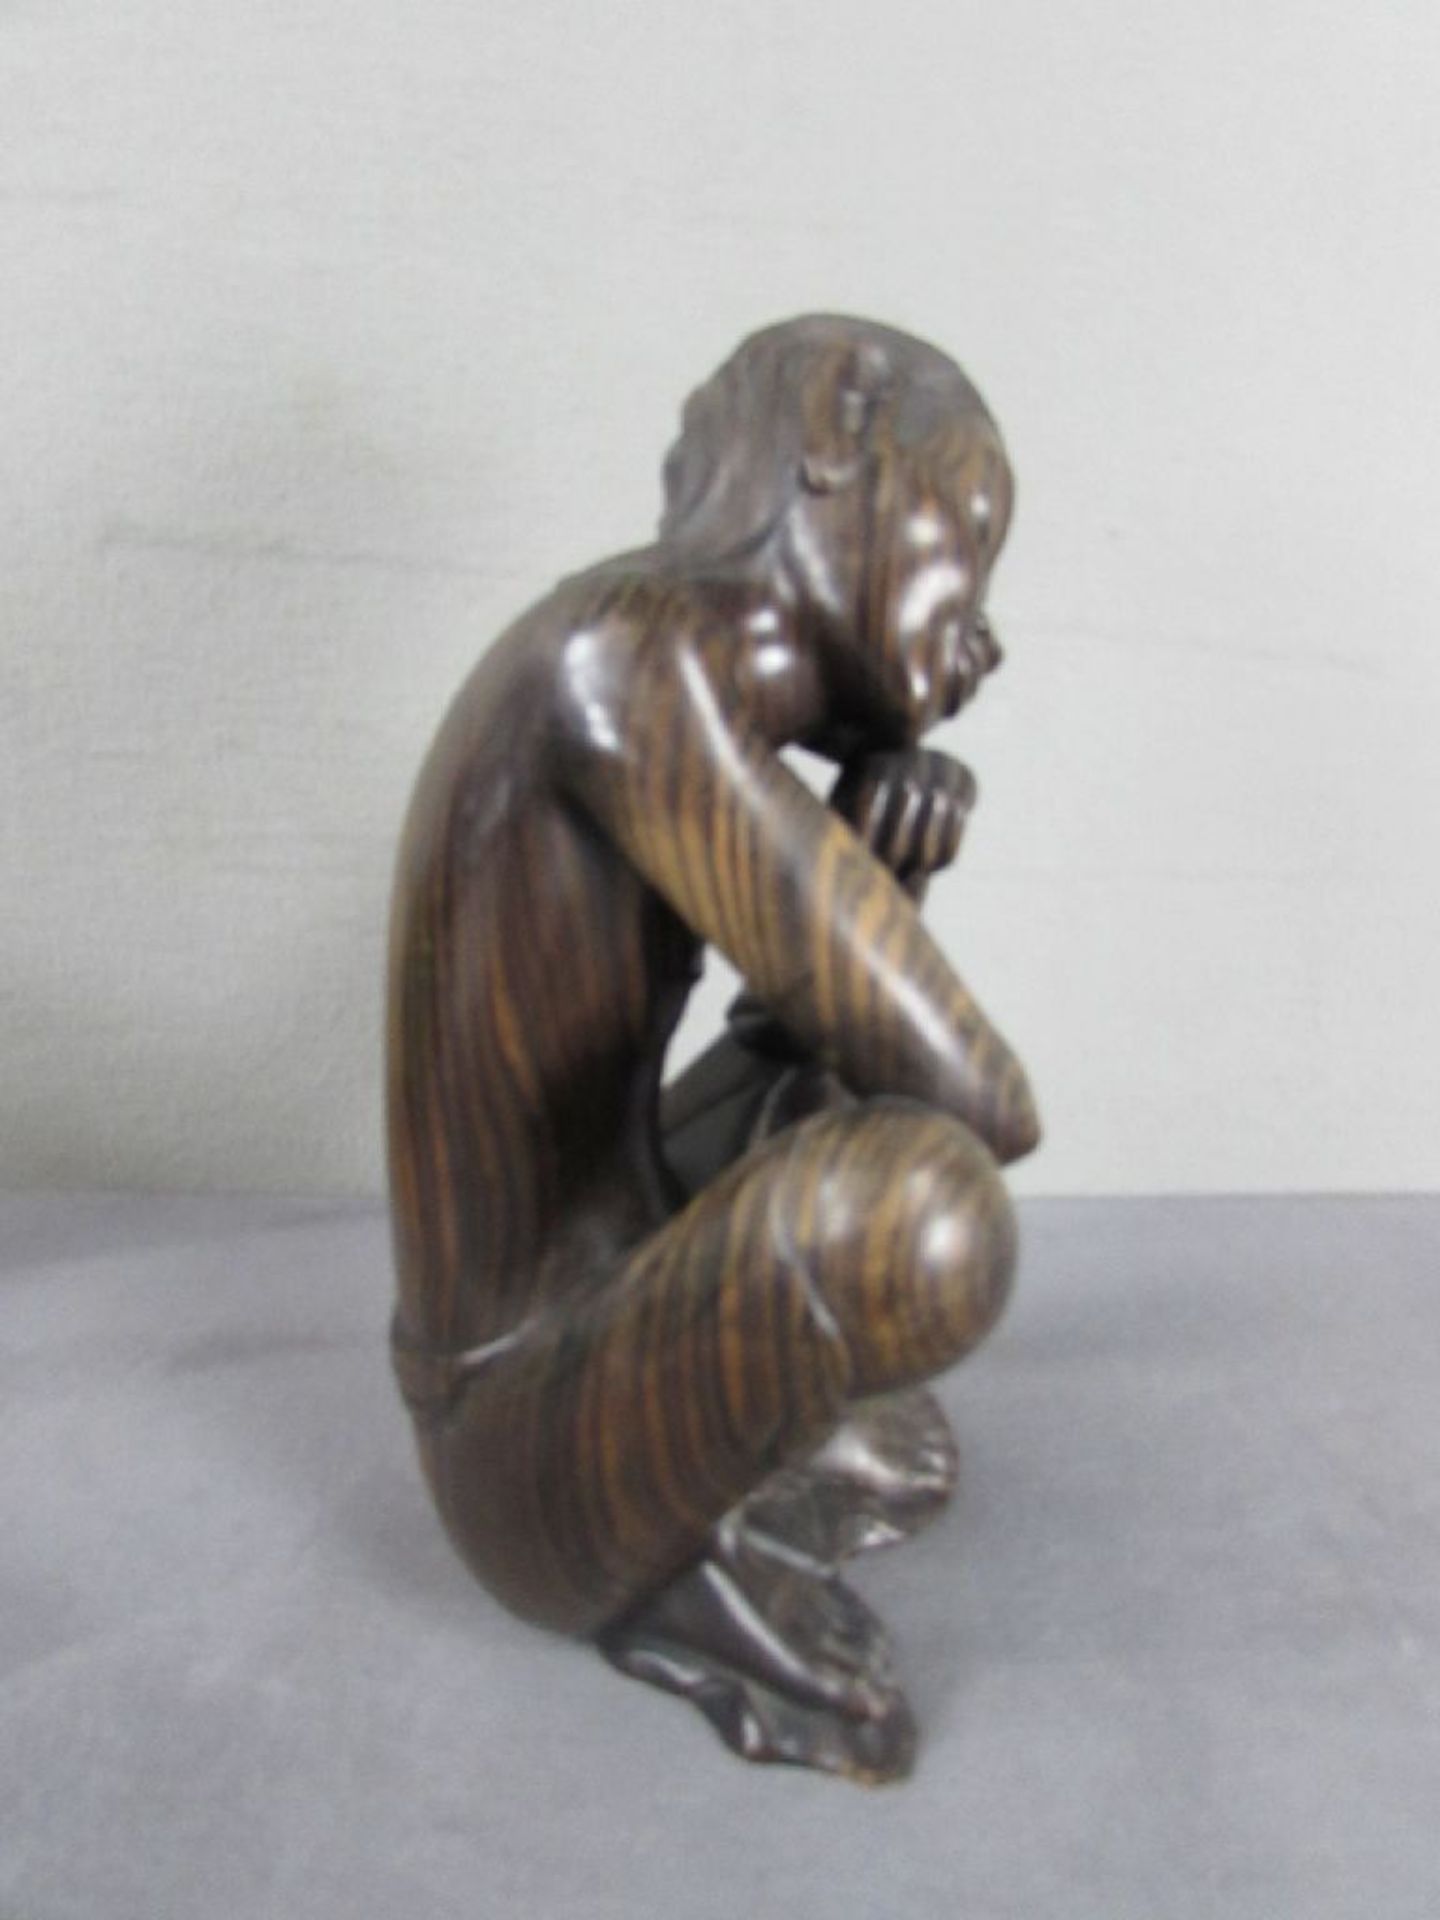 Skulptur Hartholz denkender Asiat 30cm hoch - Image 2 of 3